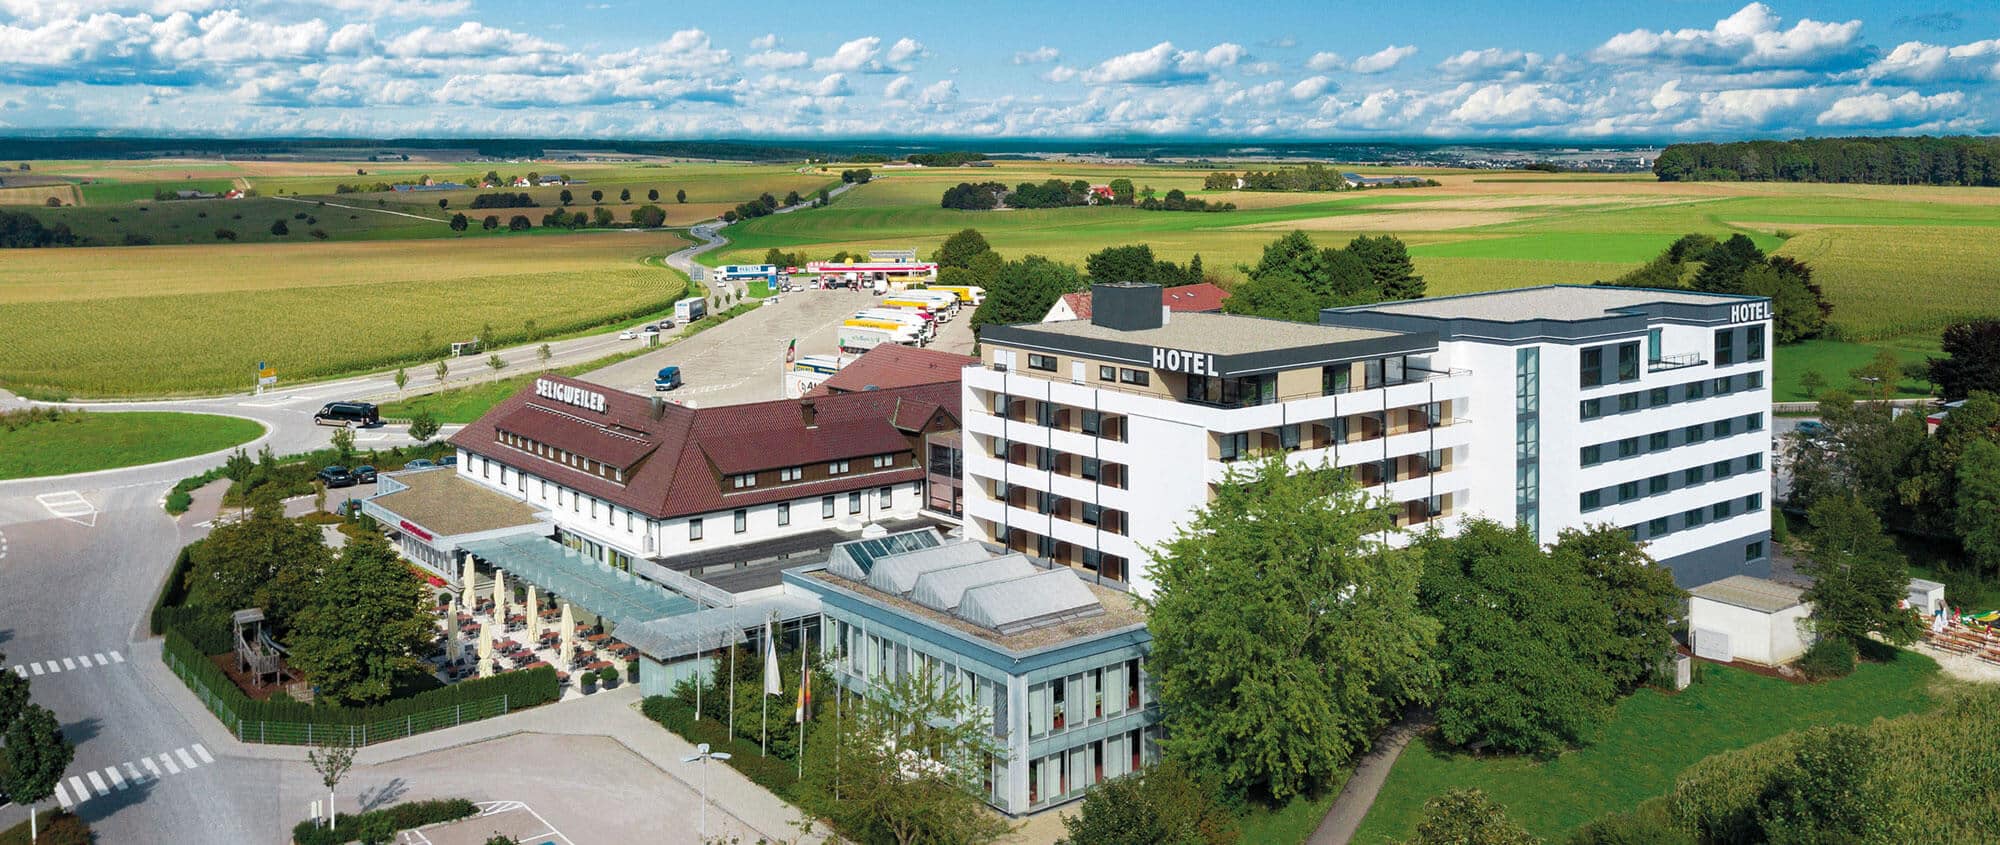 (c) Hotel-seligweiler-ulm.de